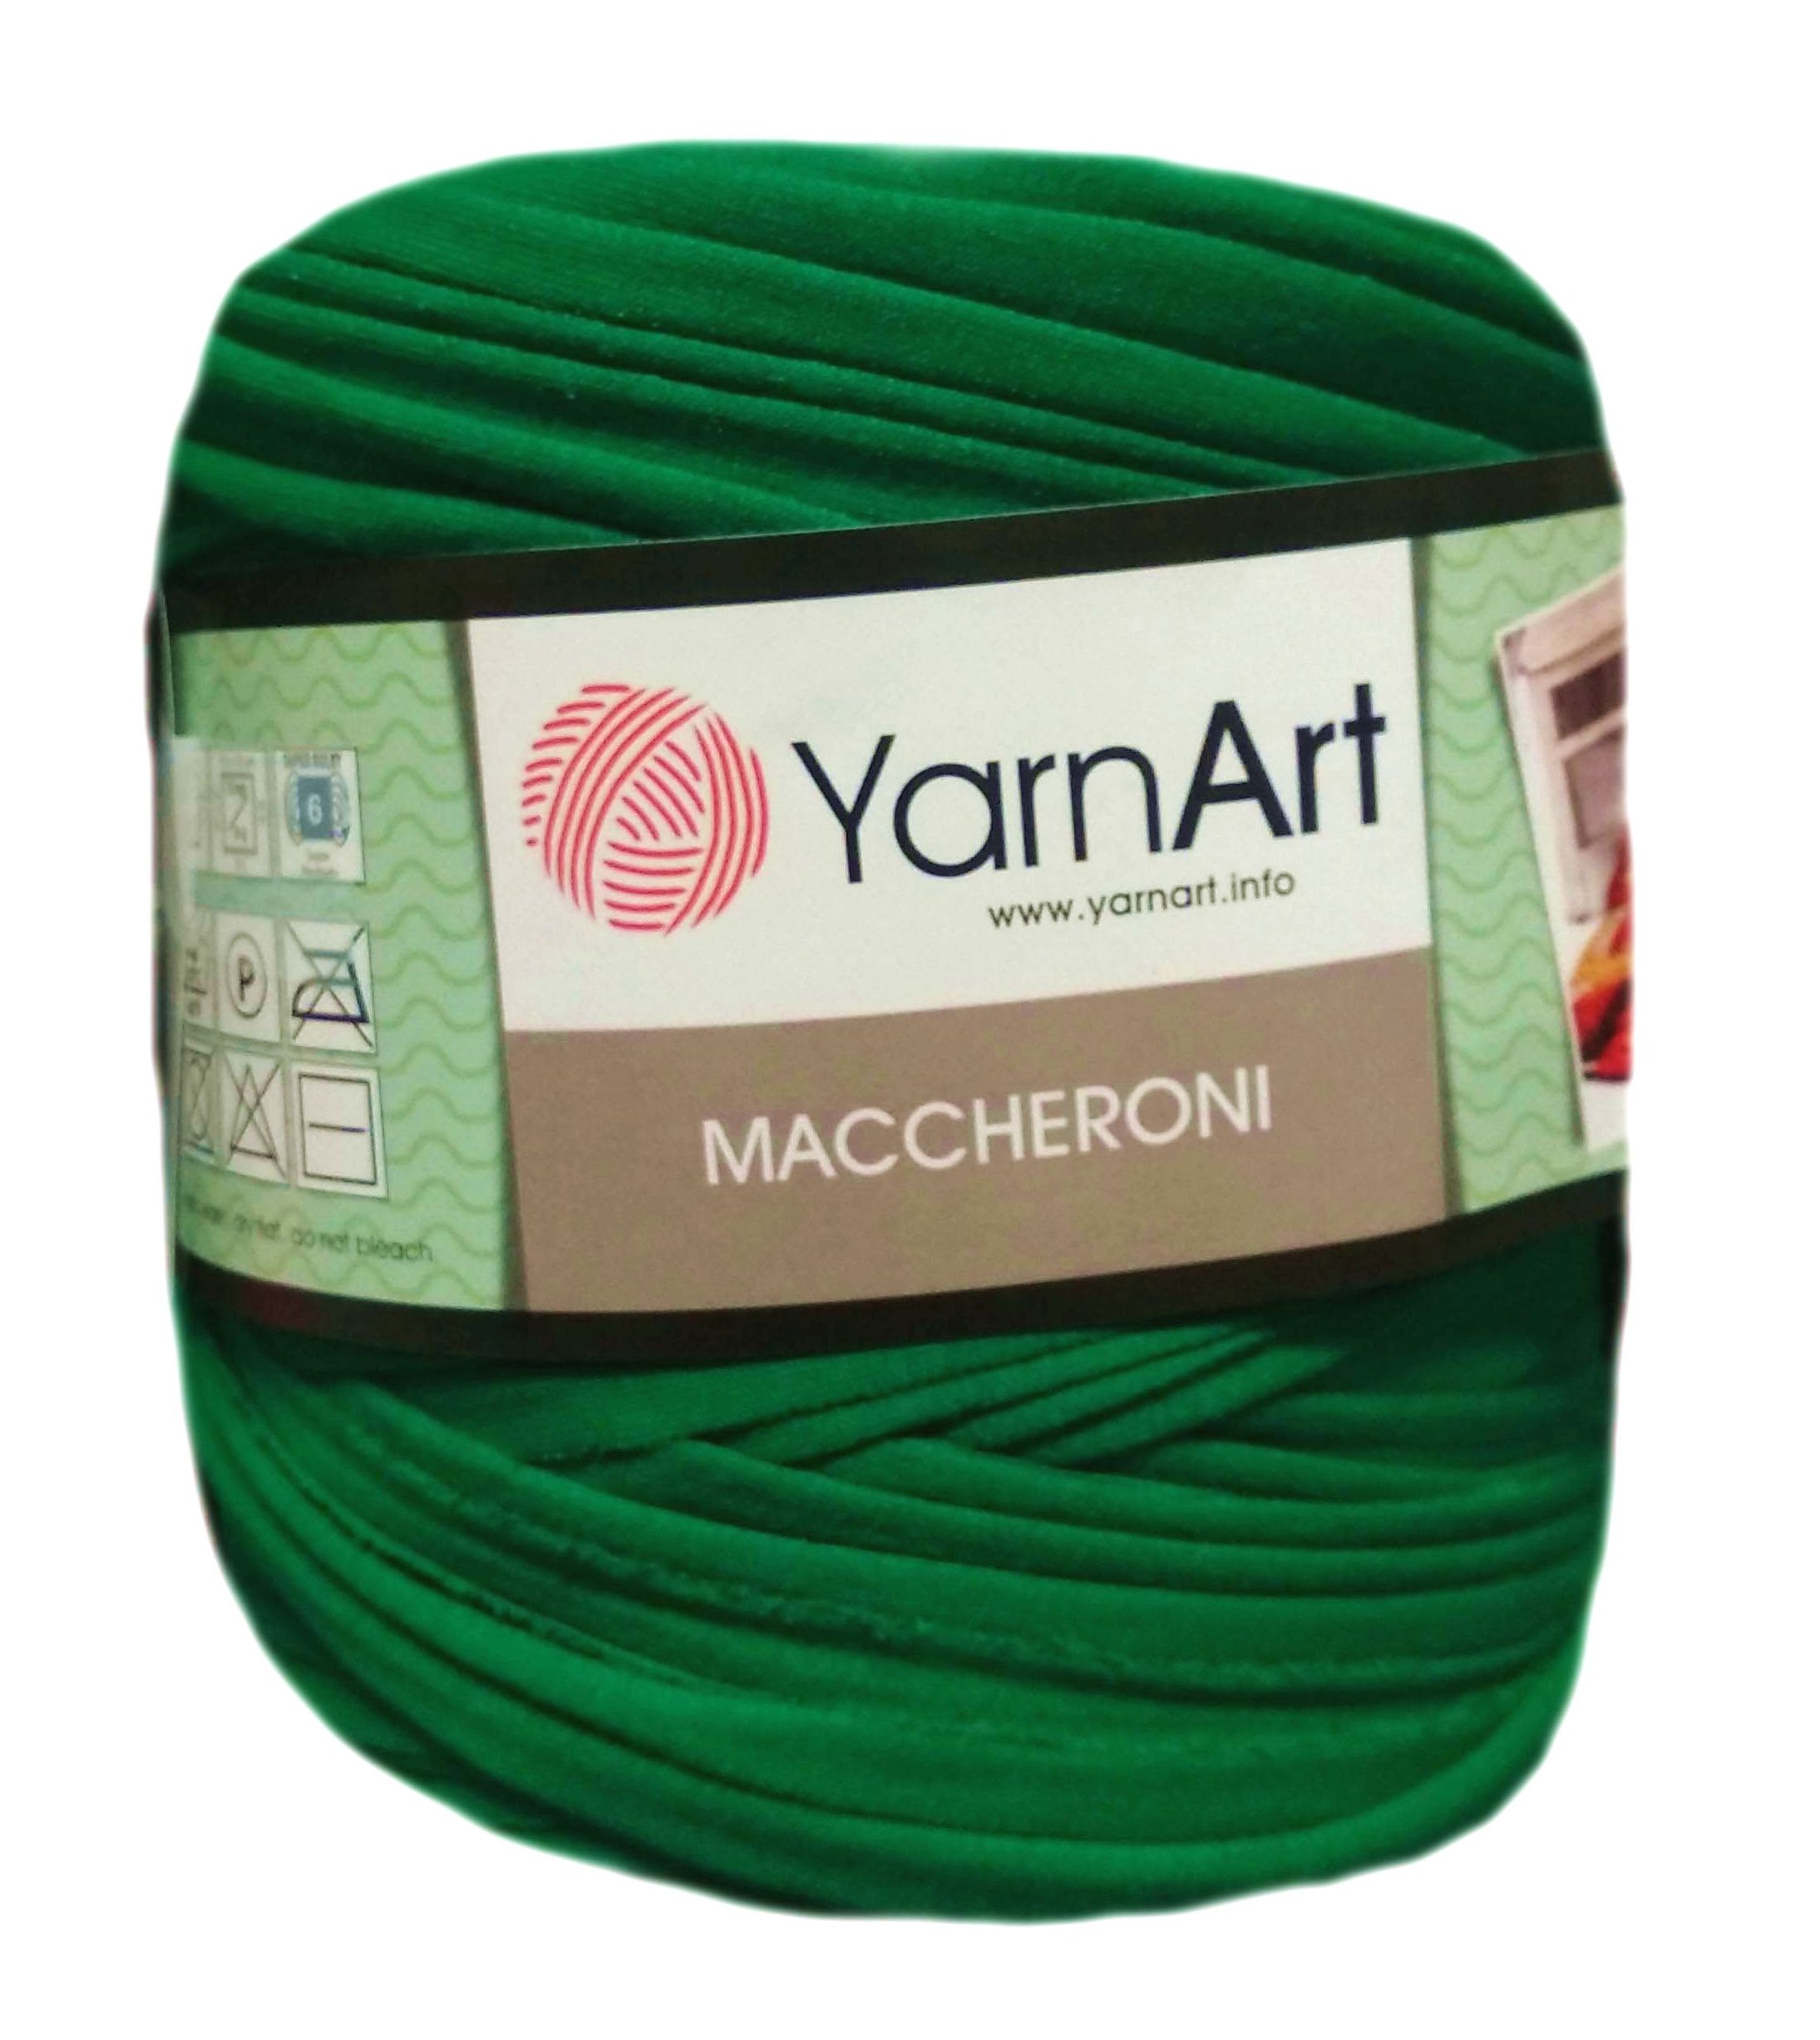 YarnArt MACCHERONI, élénkzöld póló fonal.Tű 12-15 mm.